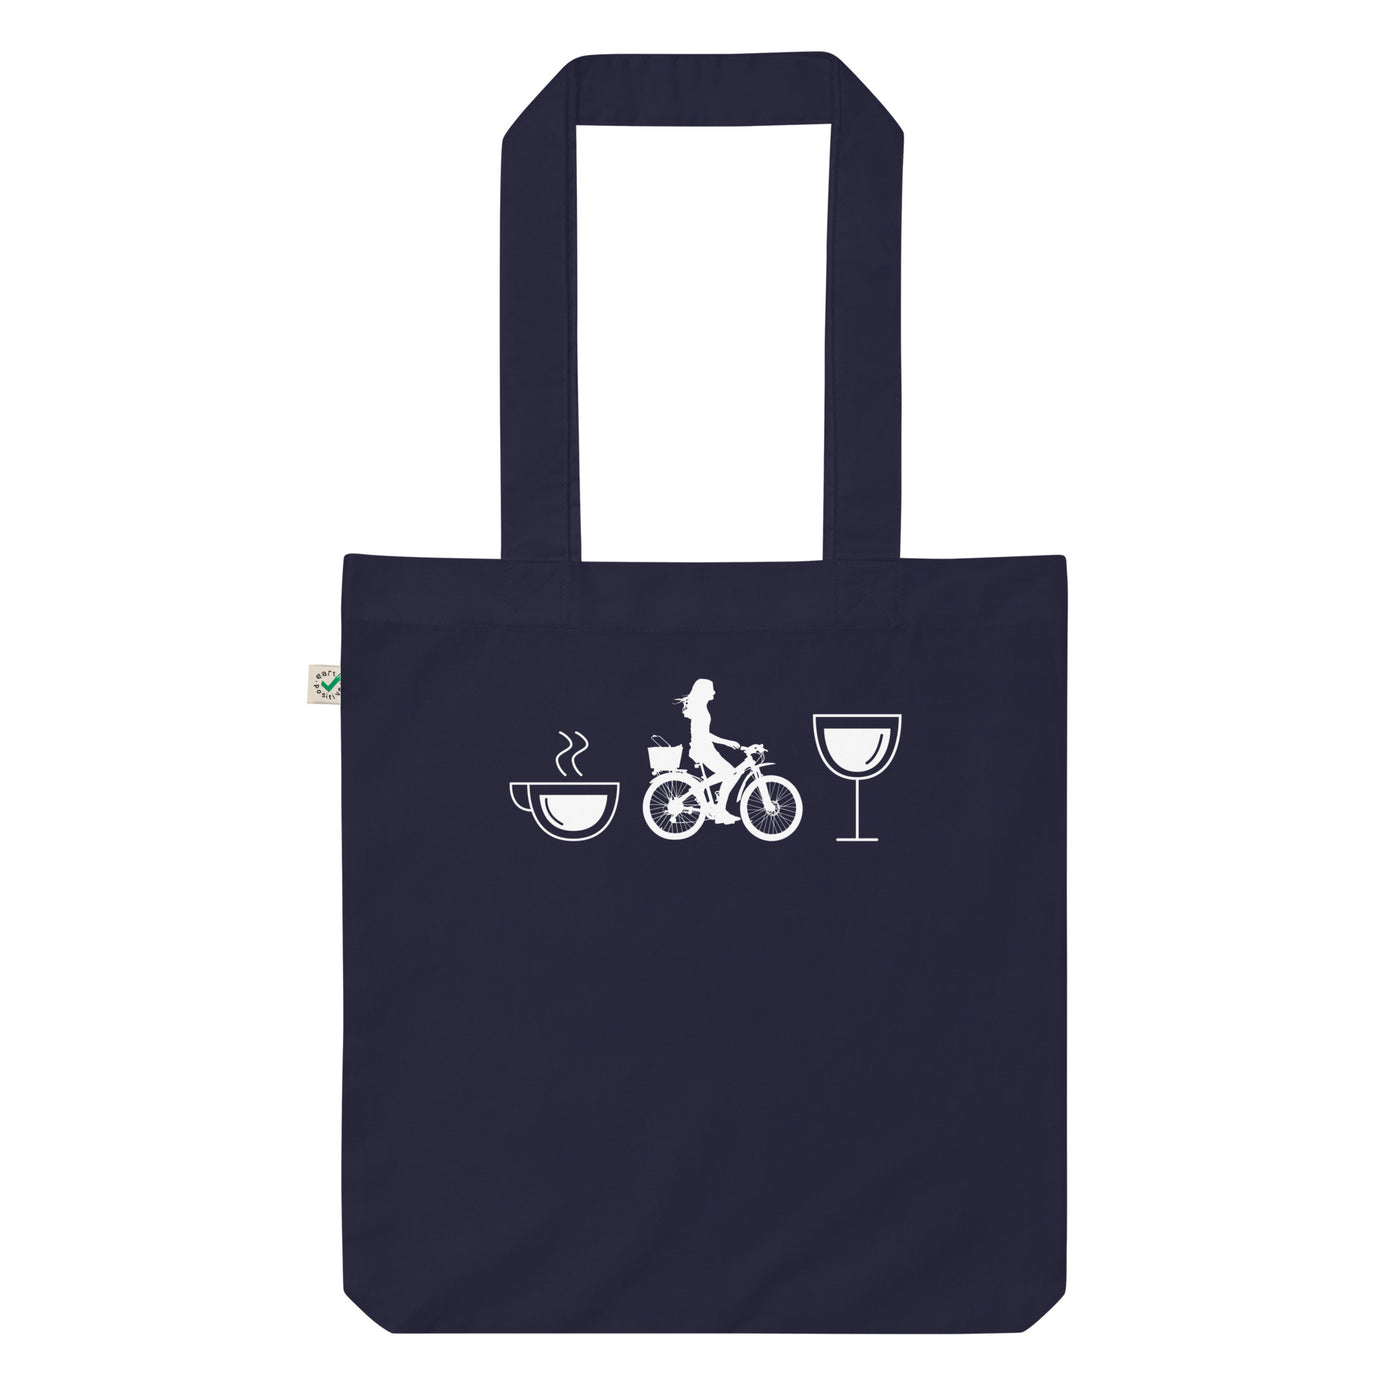 Kaffee, Wein Und Radfahren - Organic Einkaufstasche fahrrad Navy